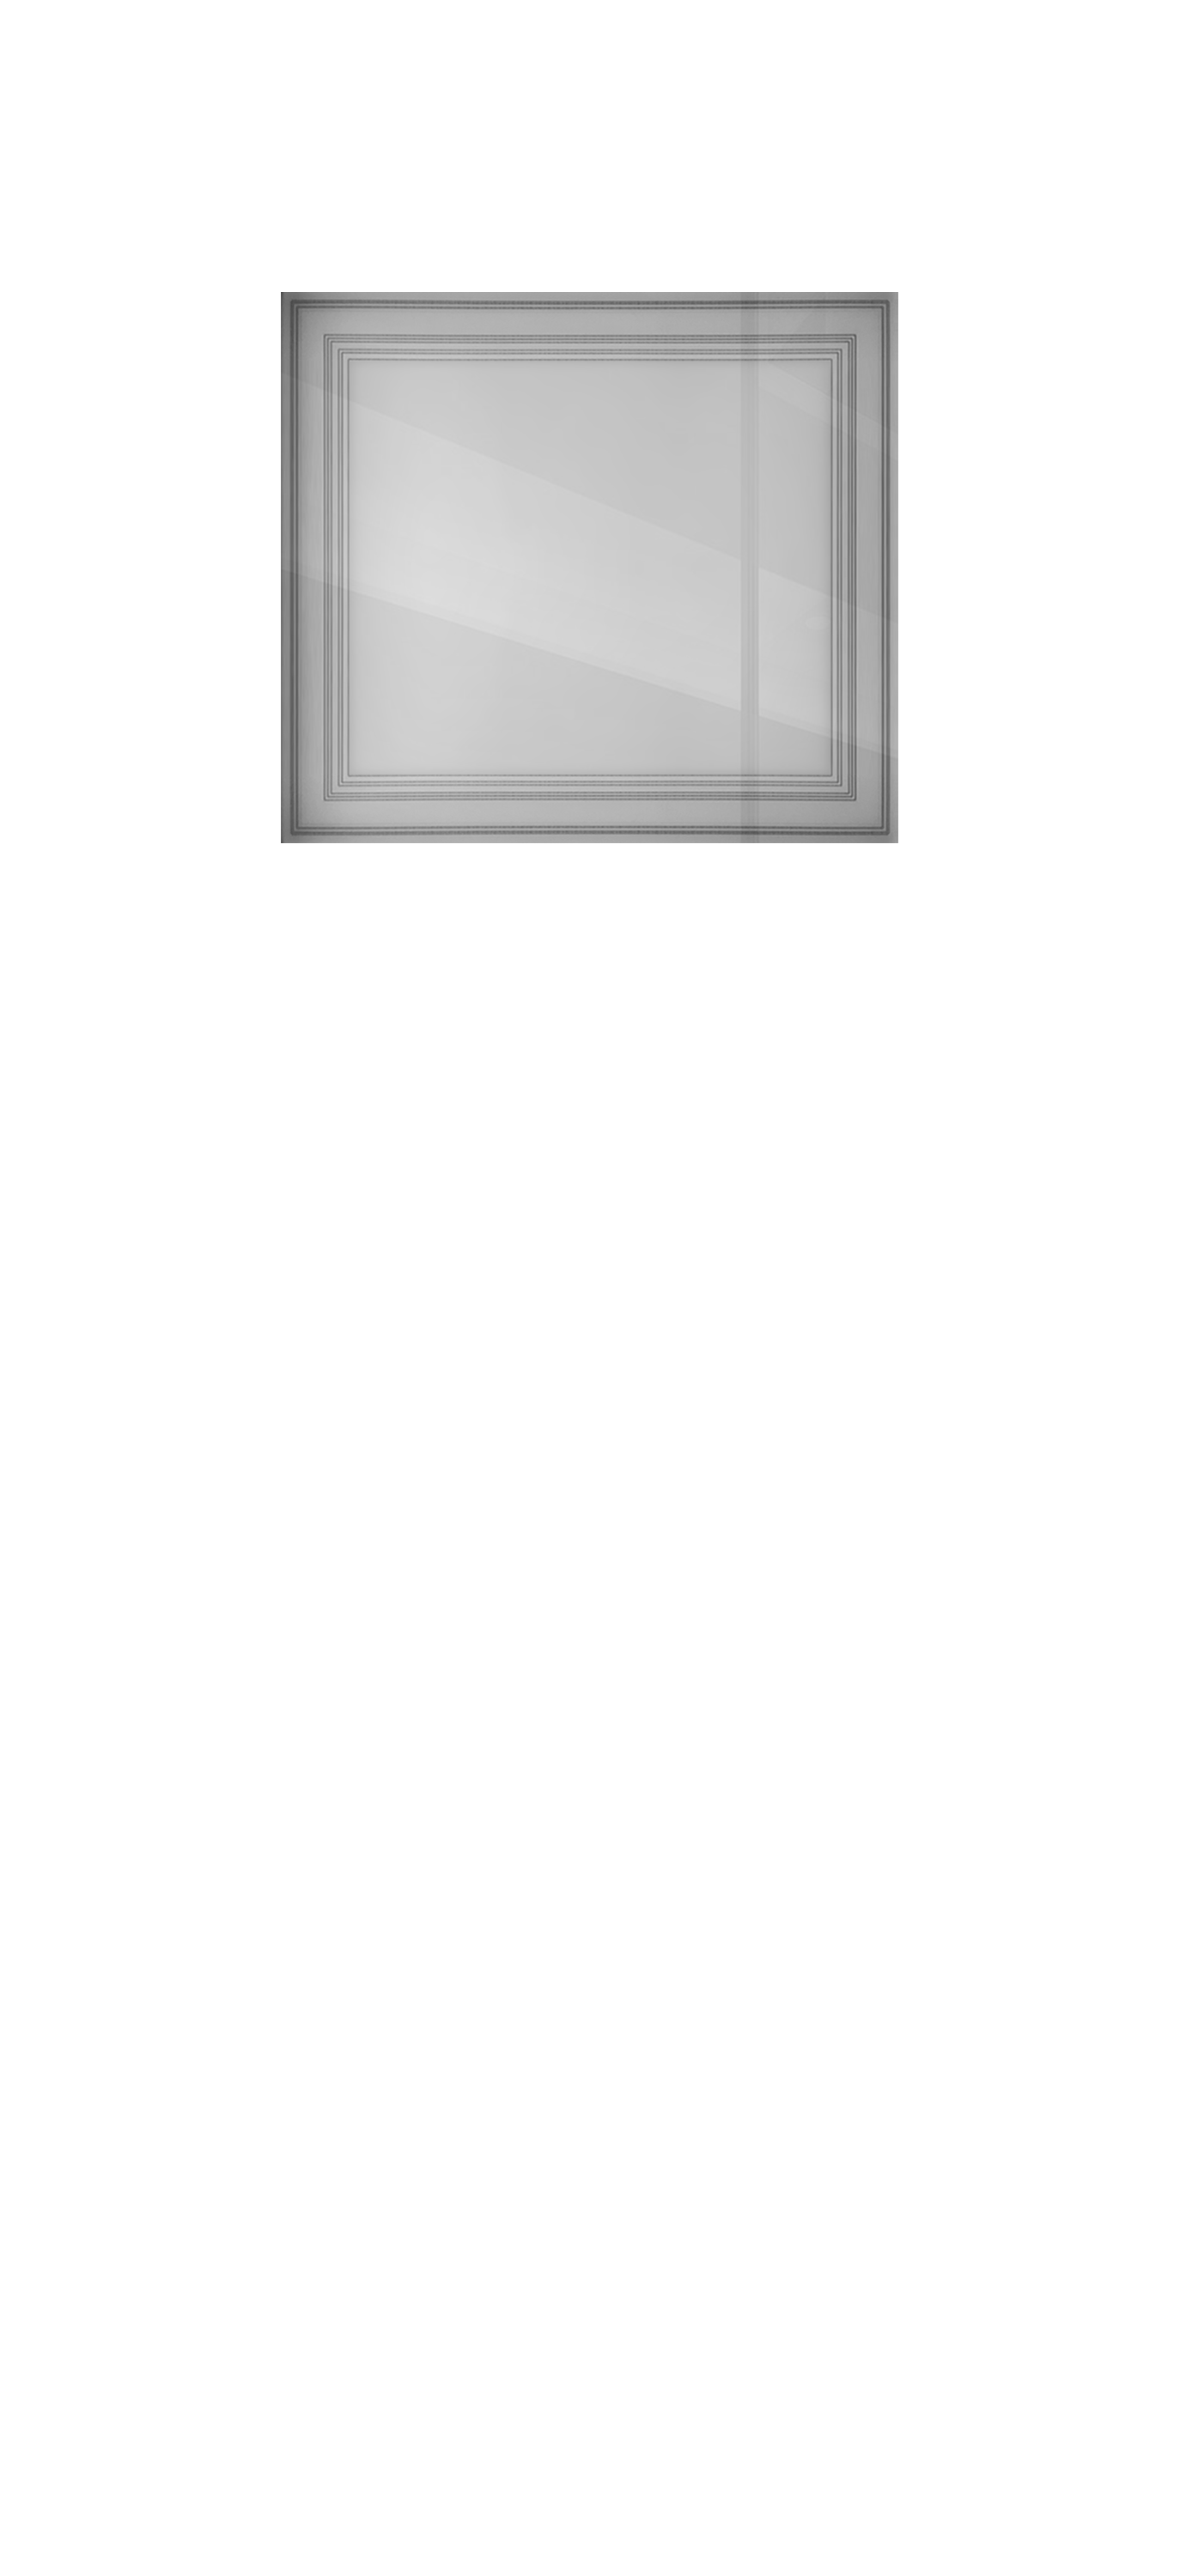 Межкомнатная дверь «Vision-3». Вид отделки RAL-7047 эмаль Остекление:  Cтандартный наличник